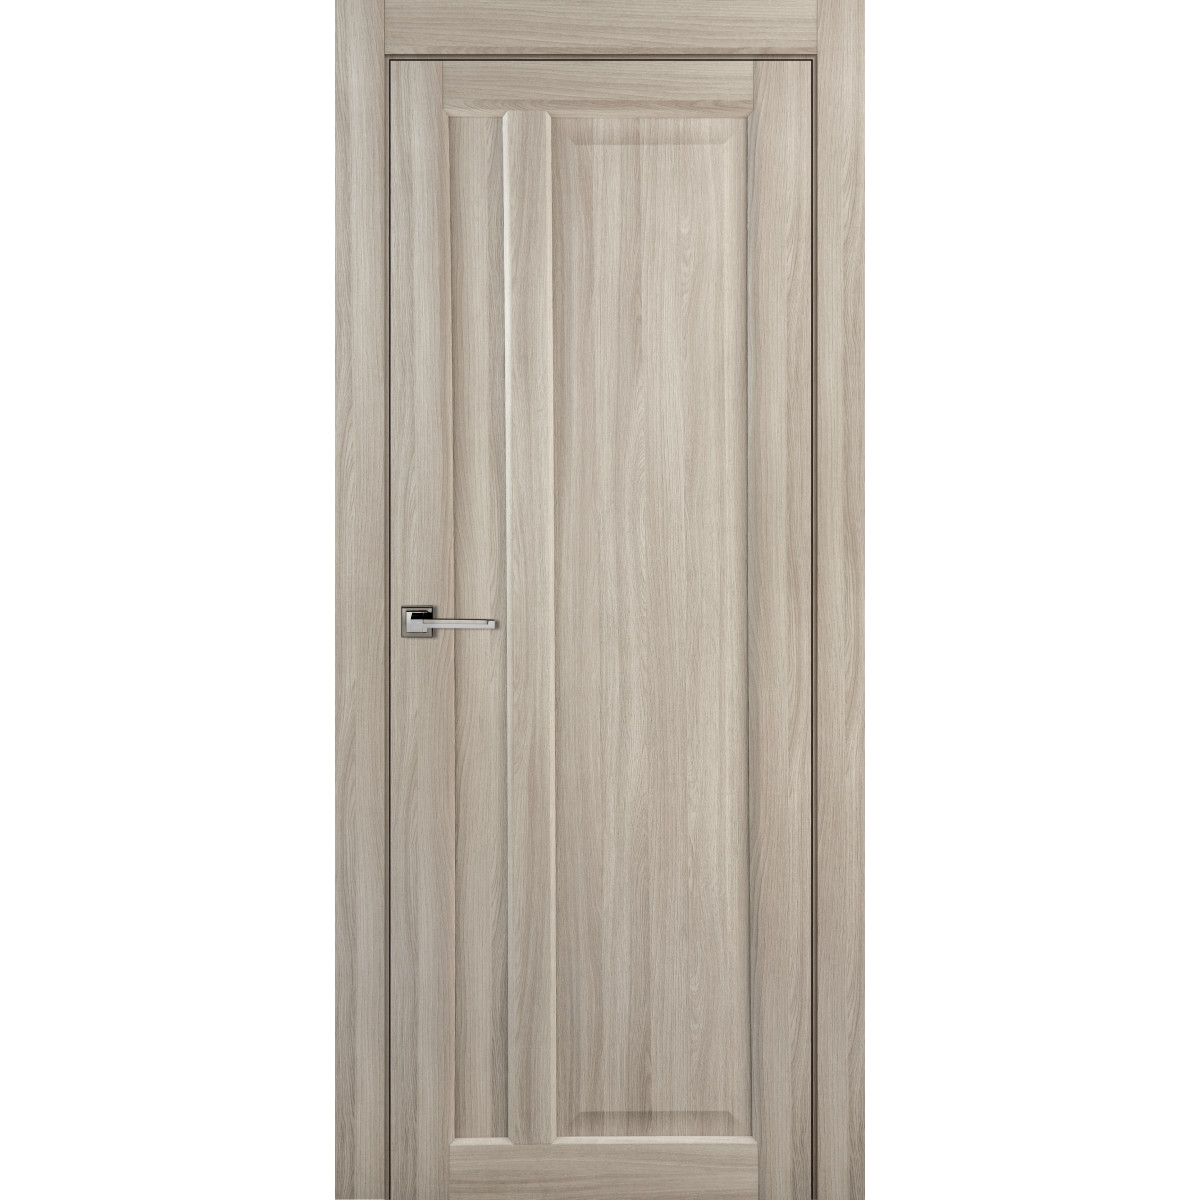 Дверь межкомнатная глухая Artens Мария 90x200 см, ПВХ, цвет шимо